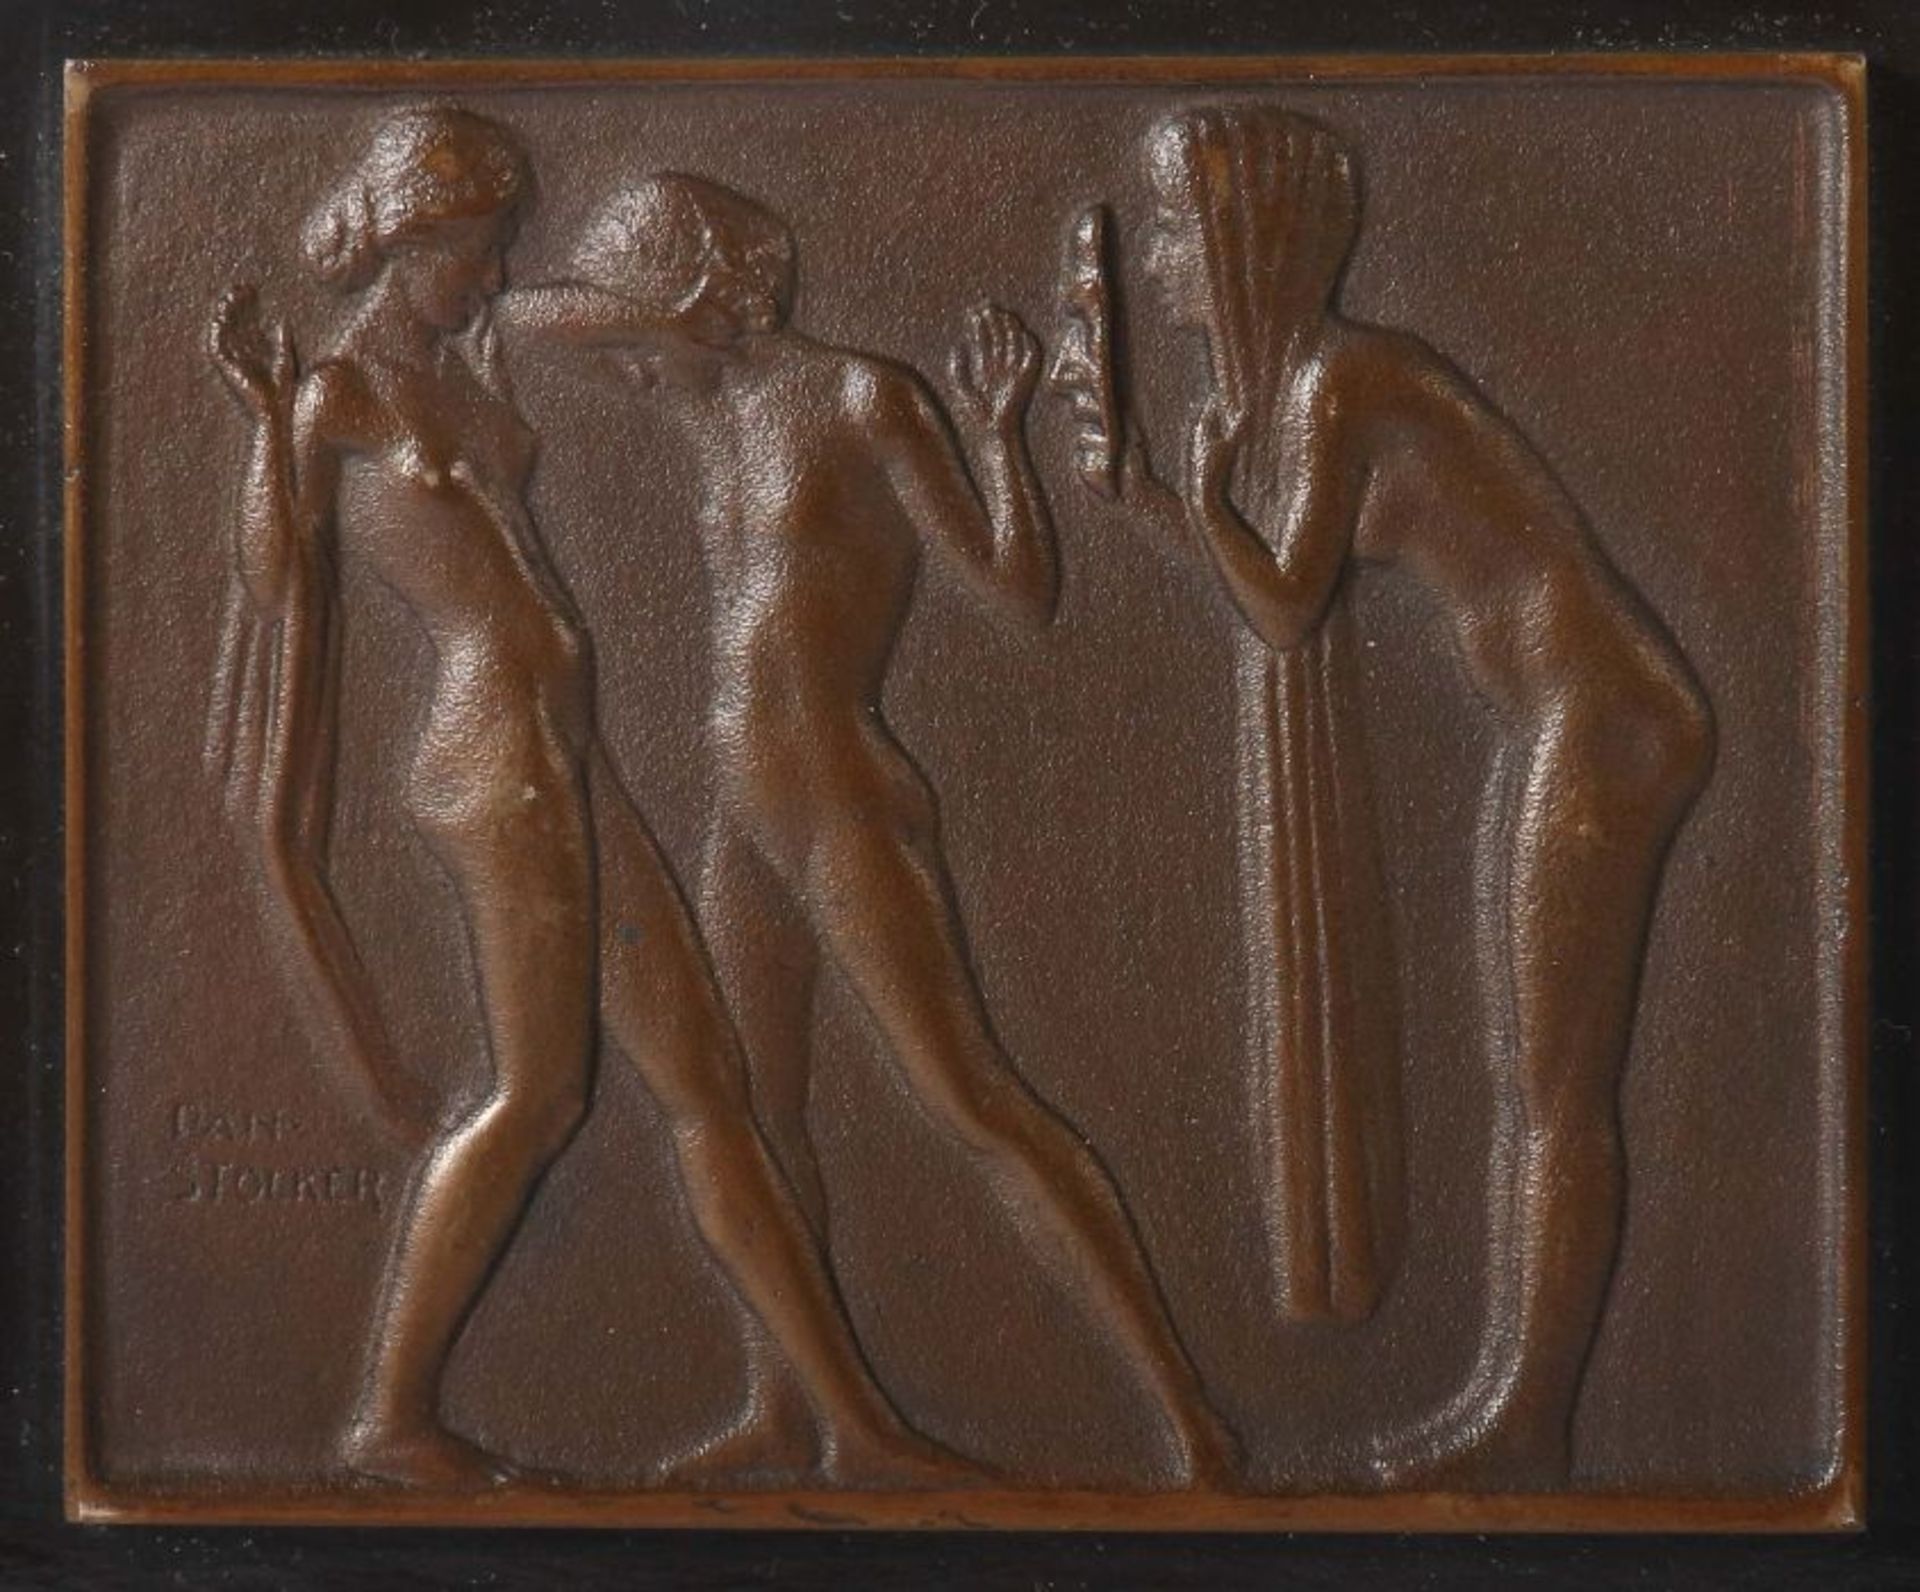 Stocker, Daniel Stuttgart 1865 - 1957 ebd., deutscher Bildhauer. 3 Aktdarstellungen, " - Bild 2 aus 5